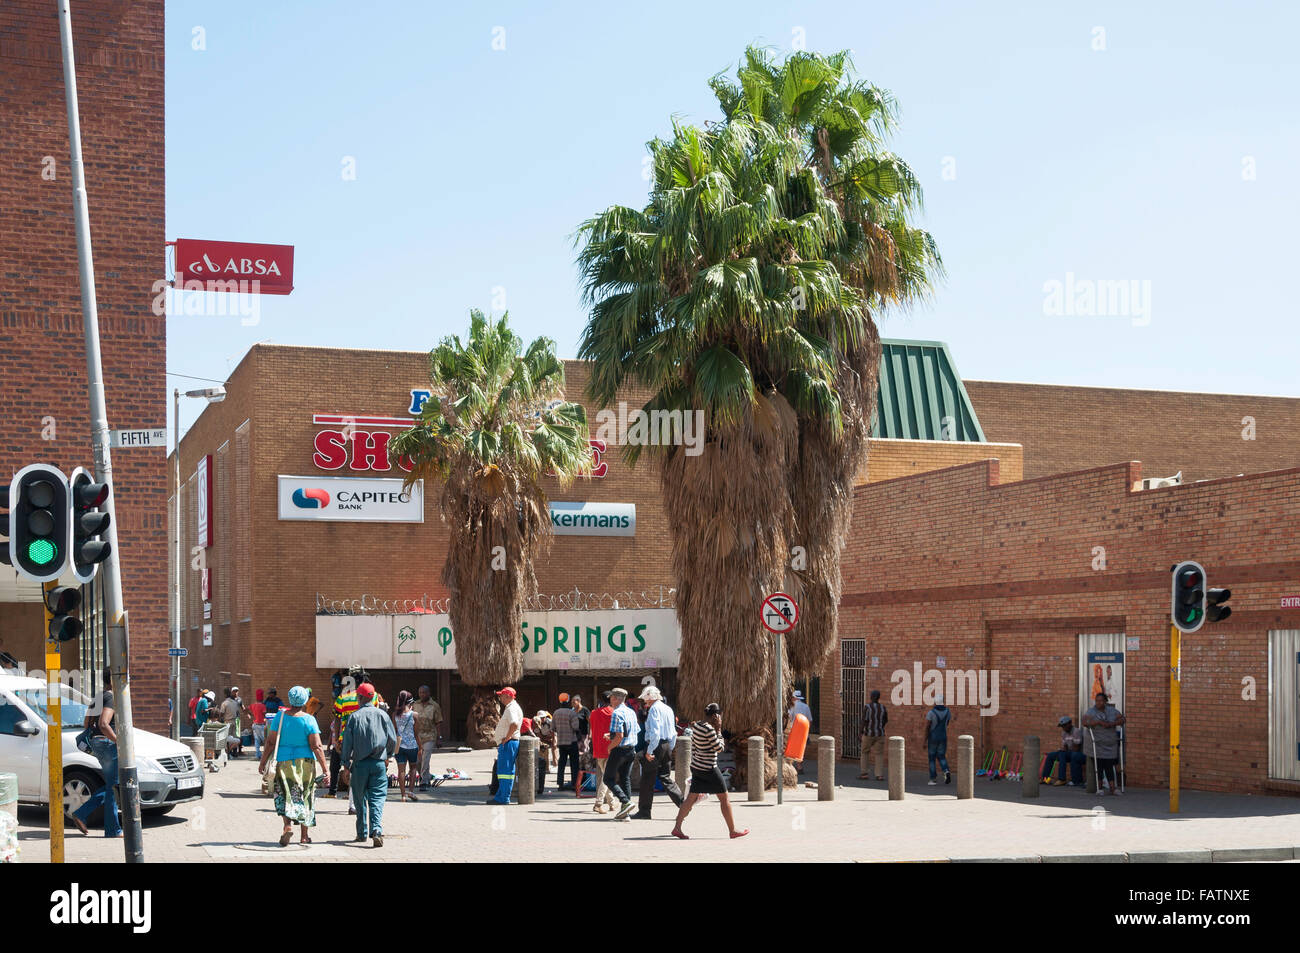 Eintritt zum Palm Springs Einkaufszentrum, 5. Avenue, Springs, Gemeinde Ekurhuleni, Provinz Gauteng, Republik Südafrika Stockfoto